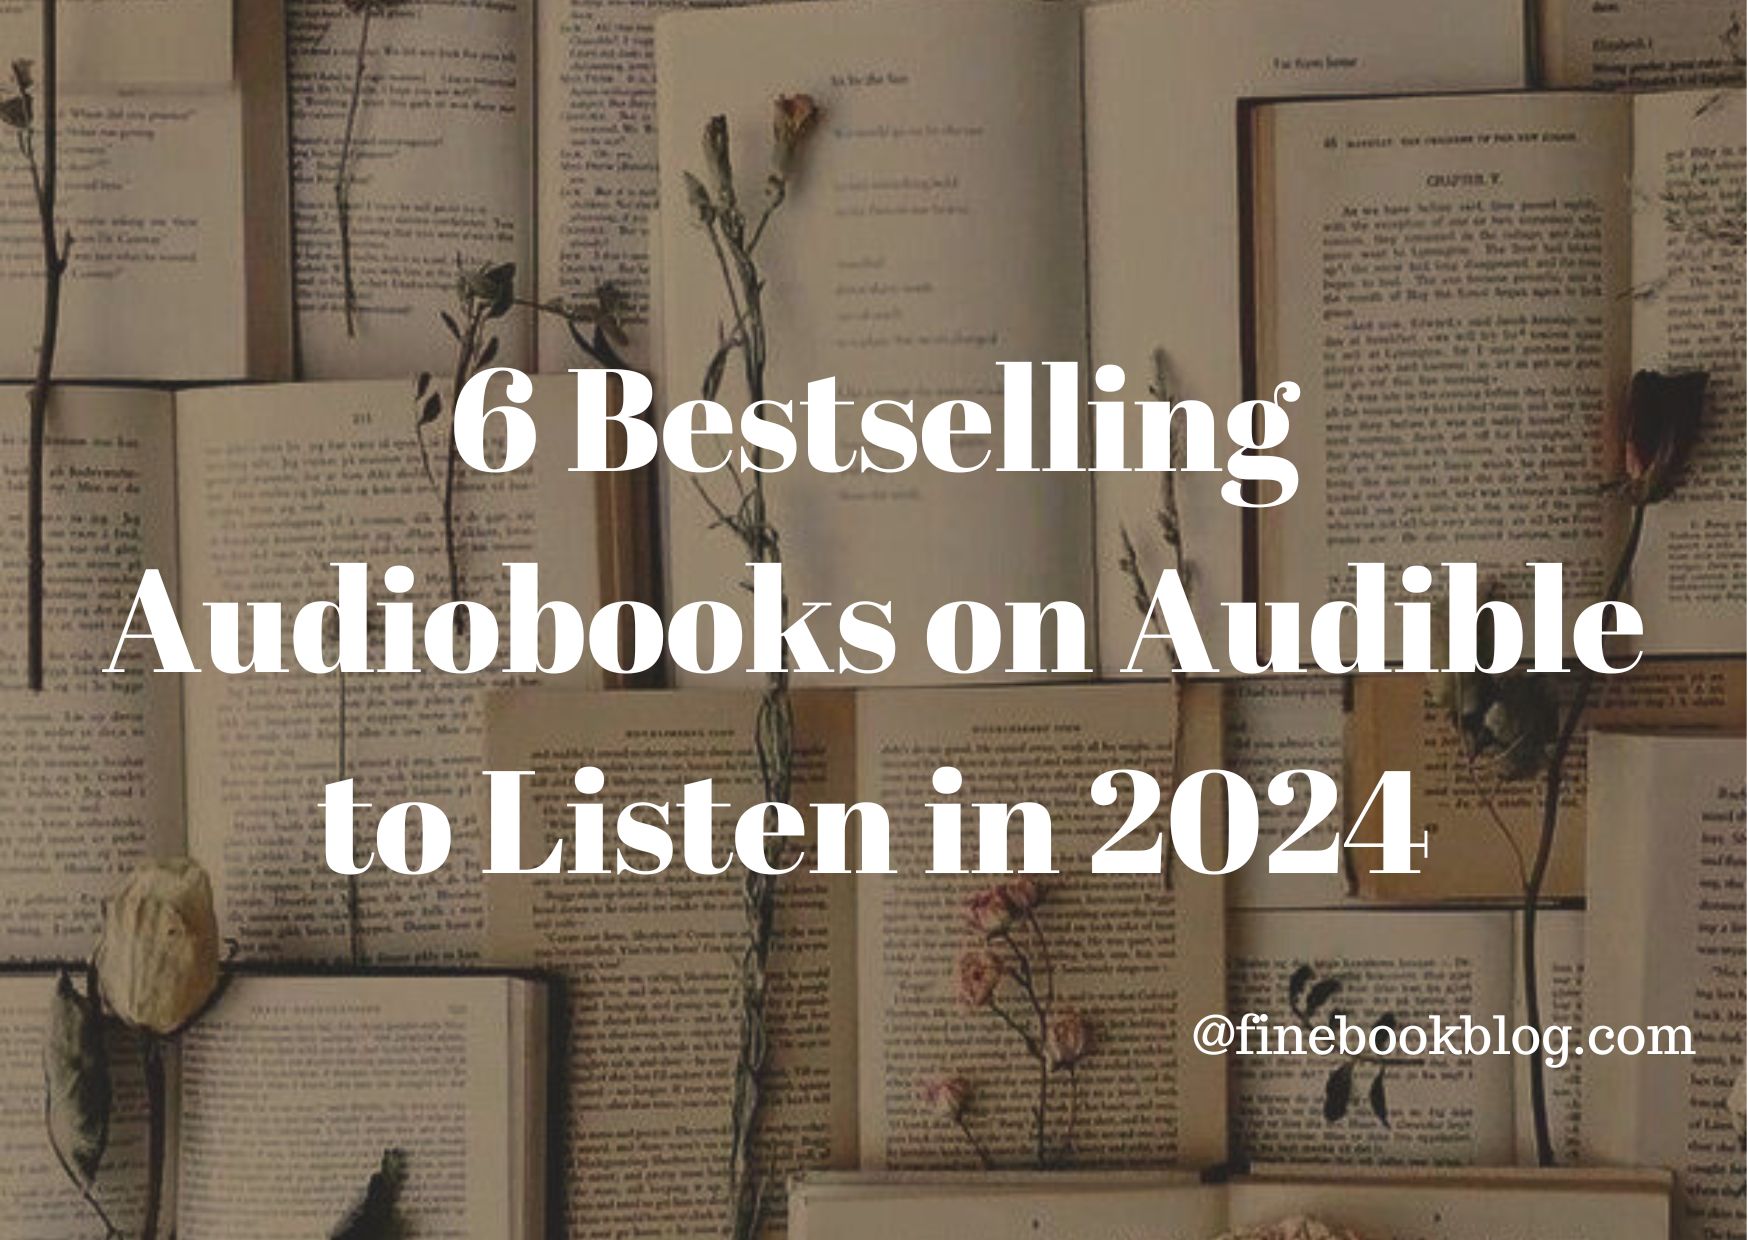 6-Bestselling-Audiobooks-on-audible-listen-2024